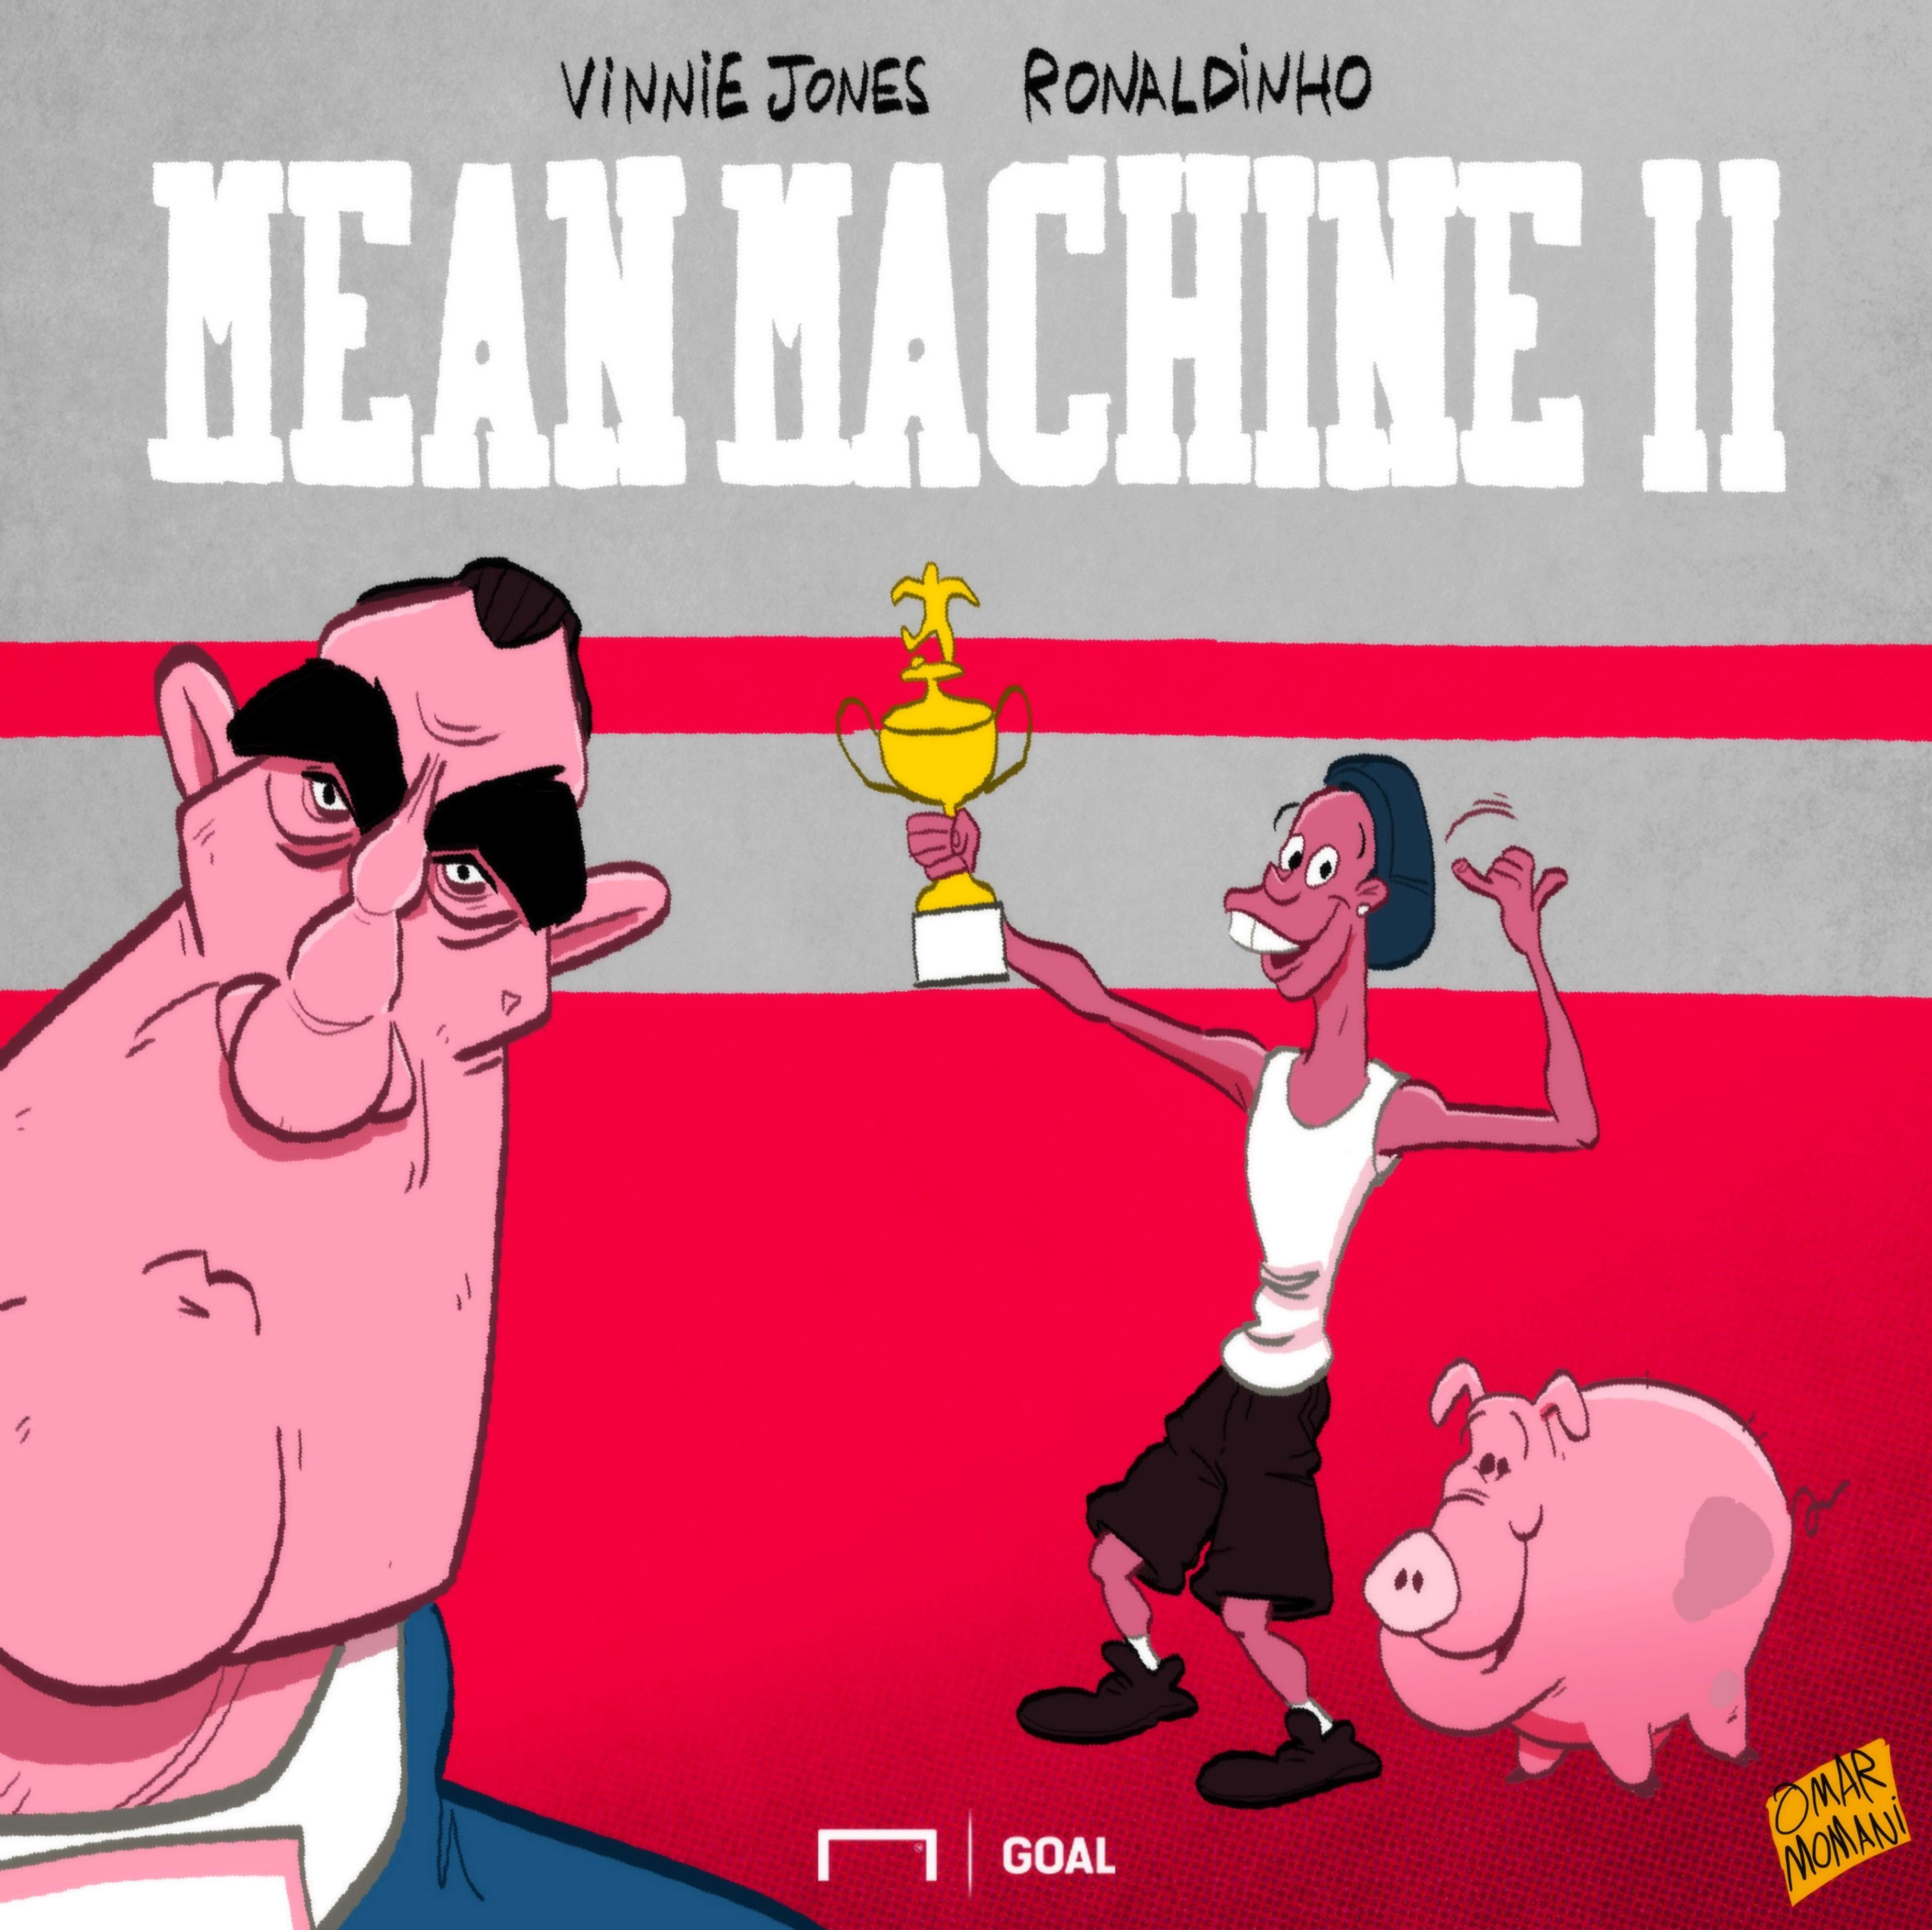 Ronaldinho, Mean Machine II cartoon